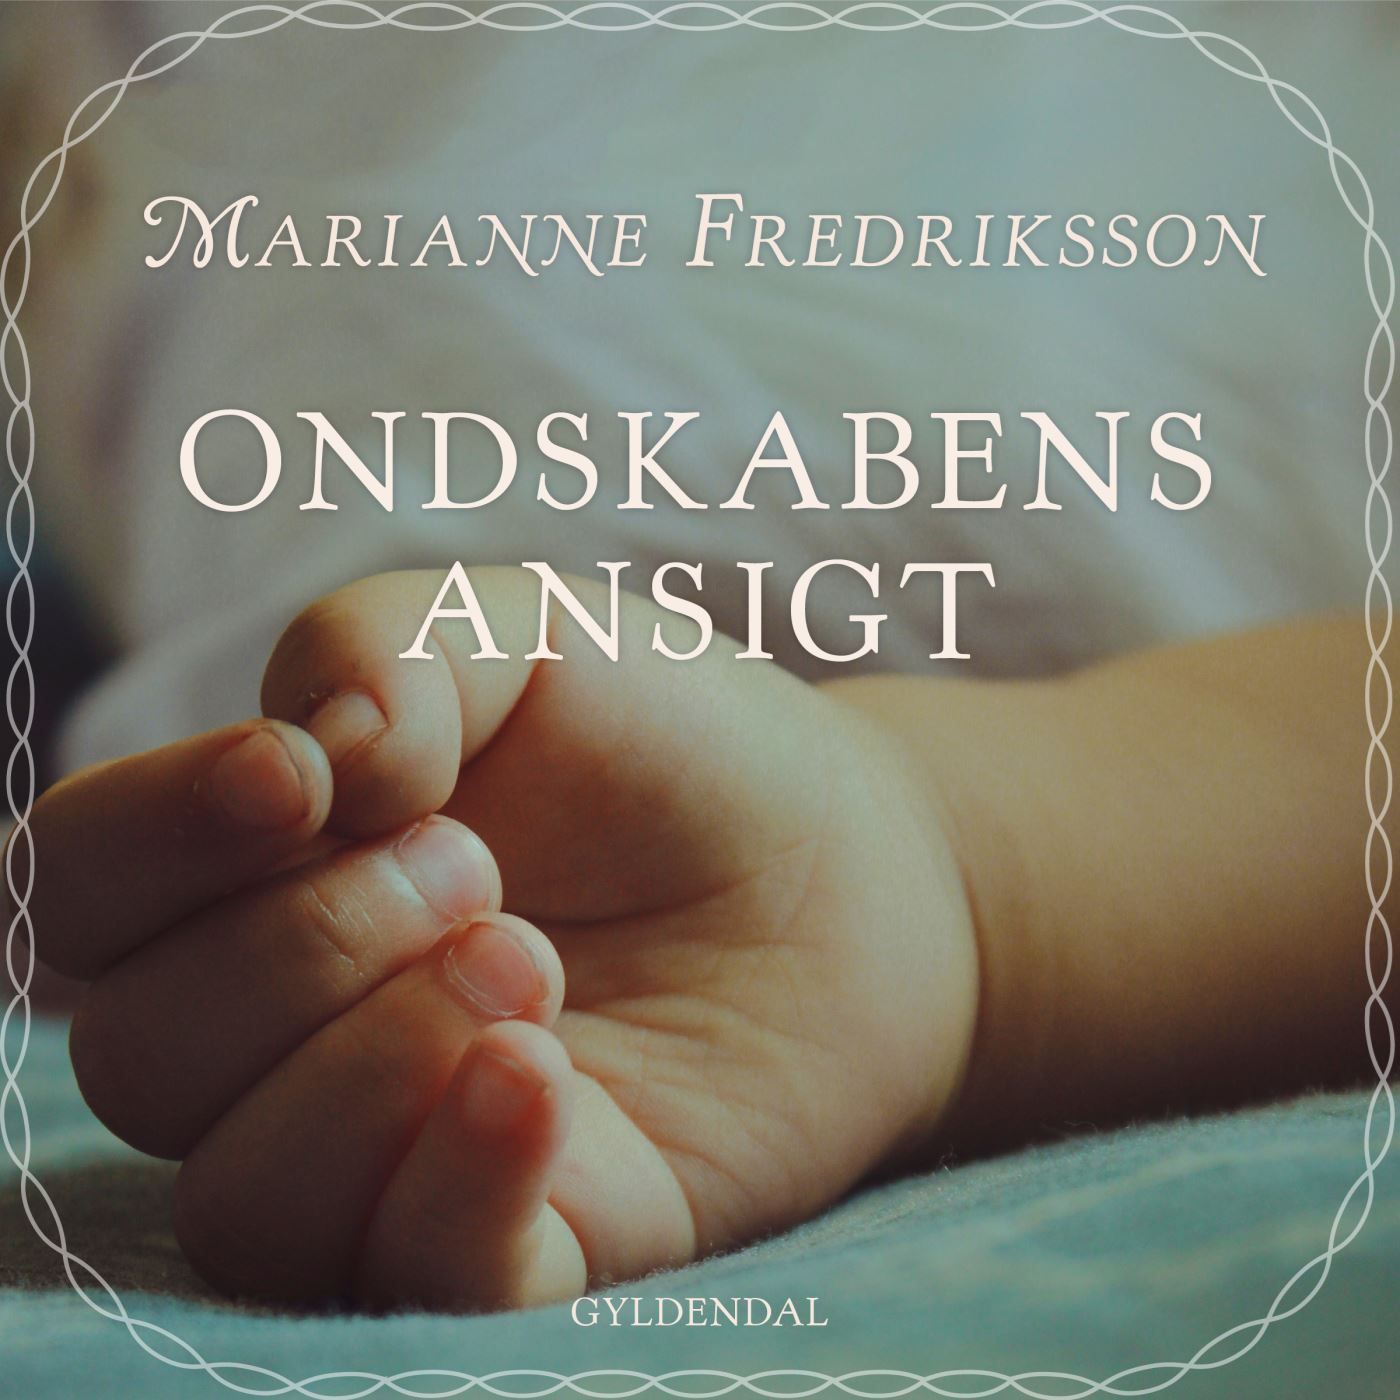 Ondskabens ansigt, ljudbok av Marianne Fredriksson